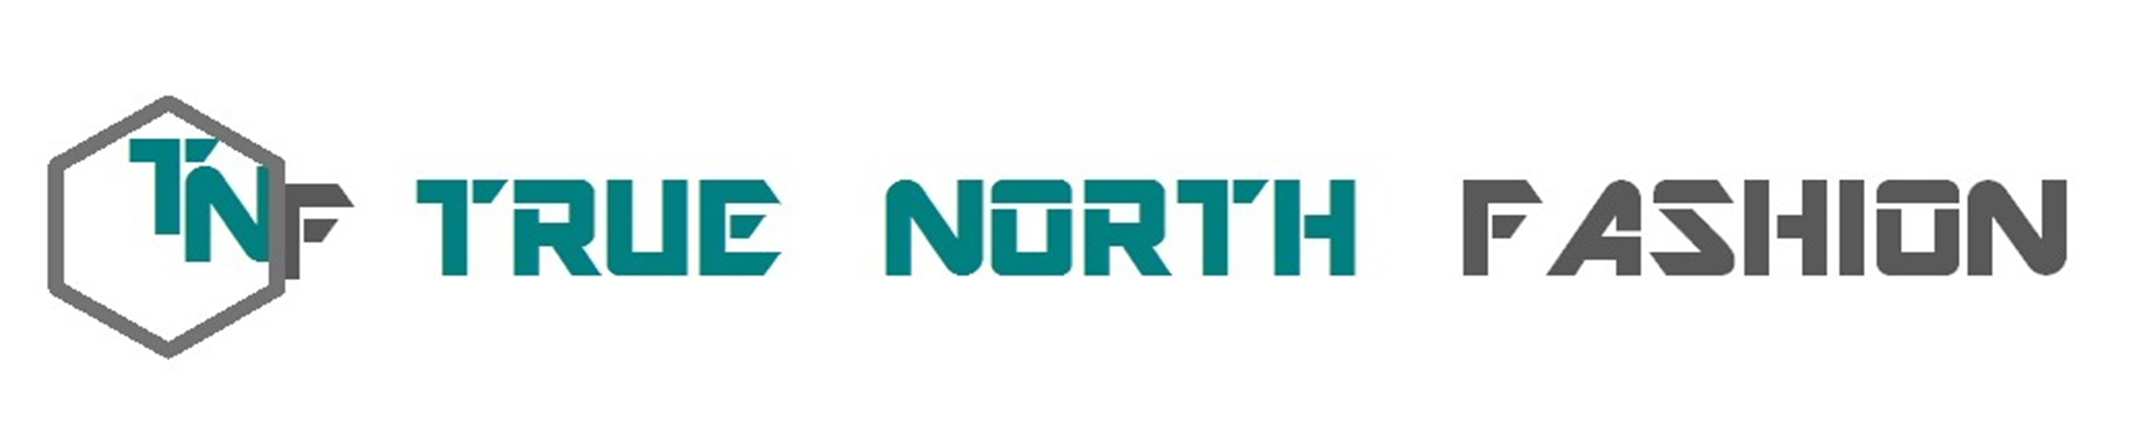 True North Fashion logo